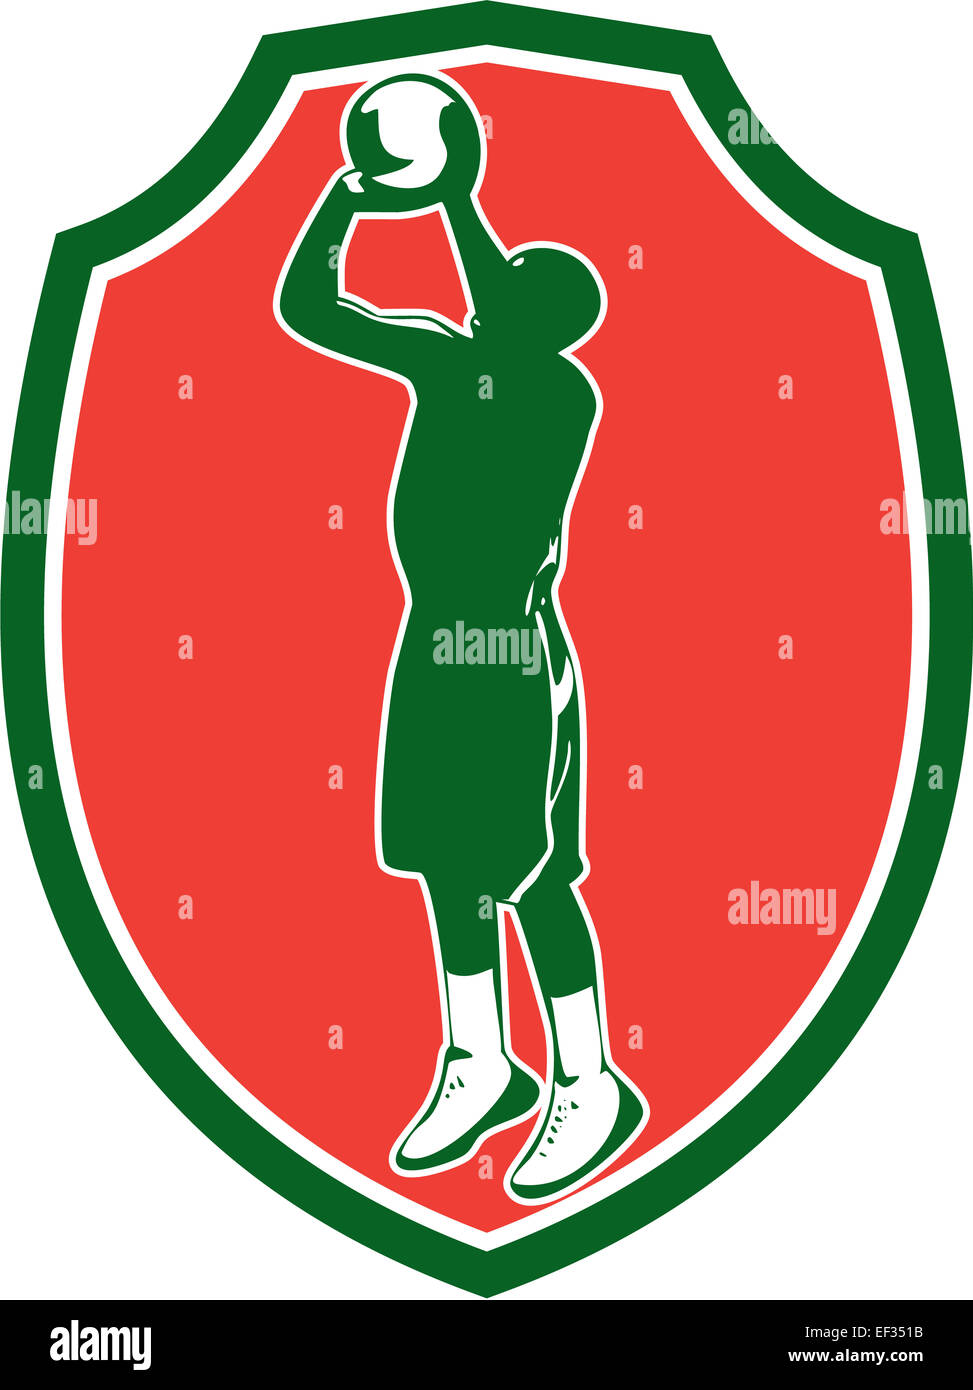 Beispiel für einen Basketball-Spieler Sprungwurf Jumper schießen springen Satz innen Schild Wappen auf isoliert Hintergrund getan im retro-Stil. Stockfoto